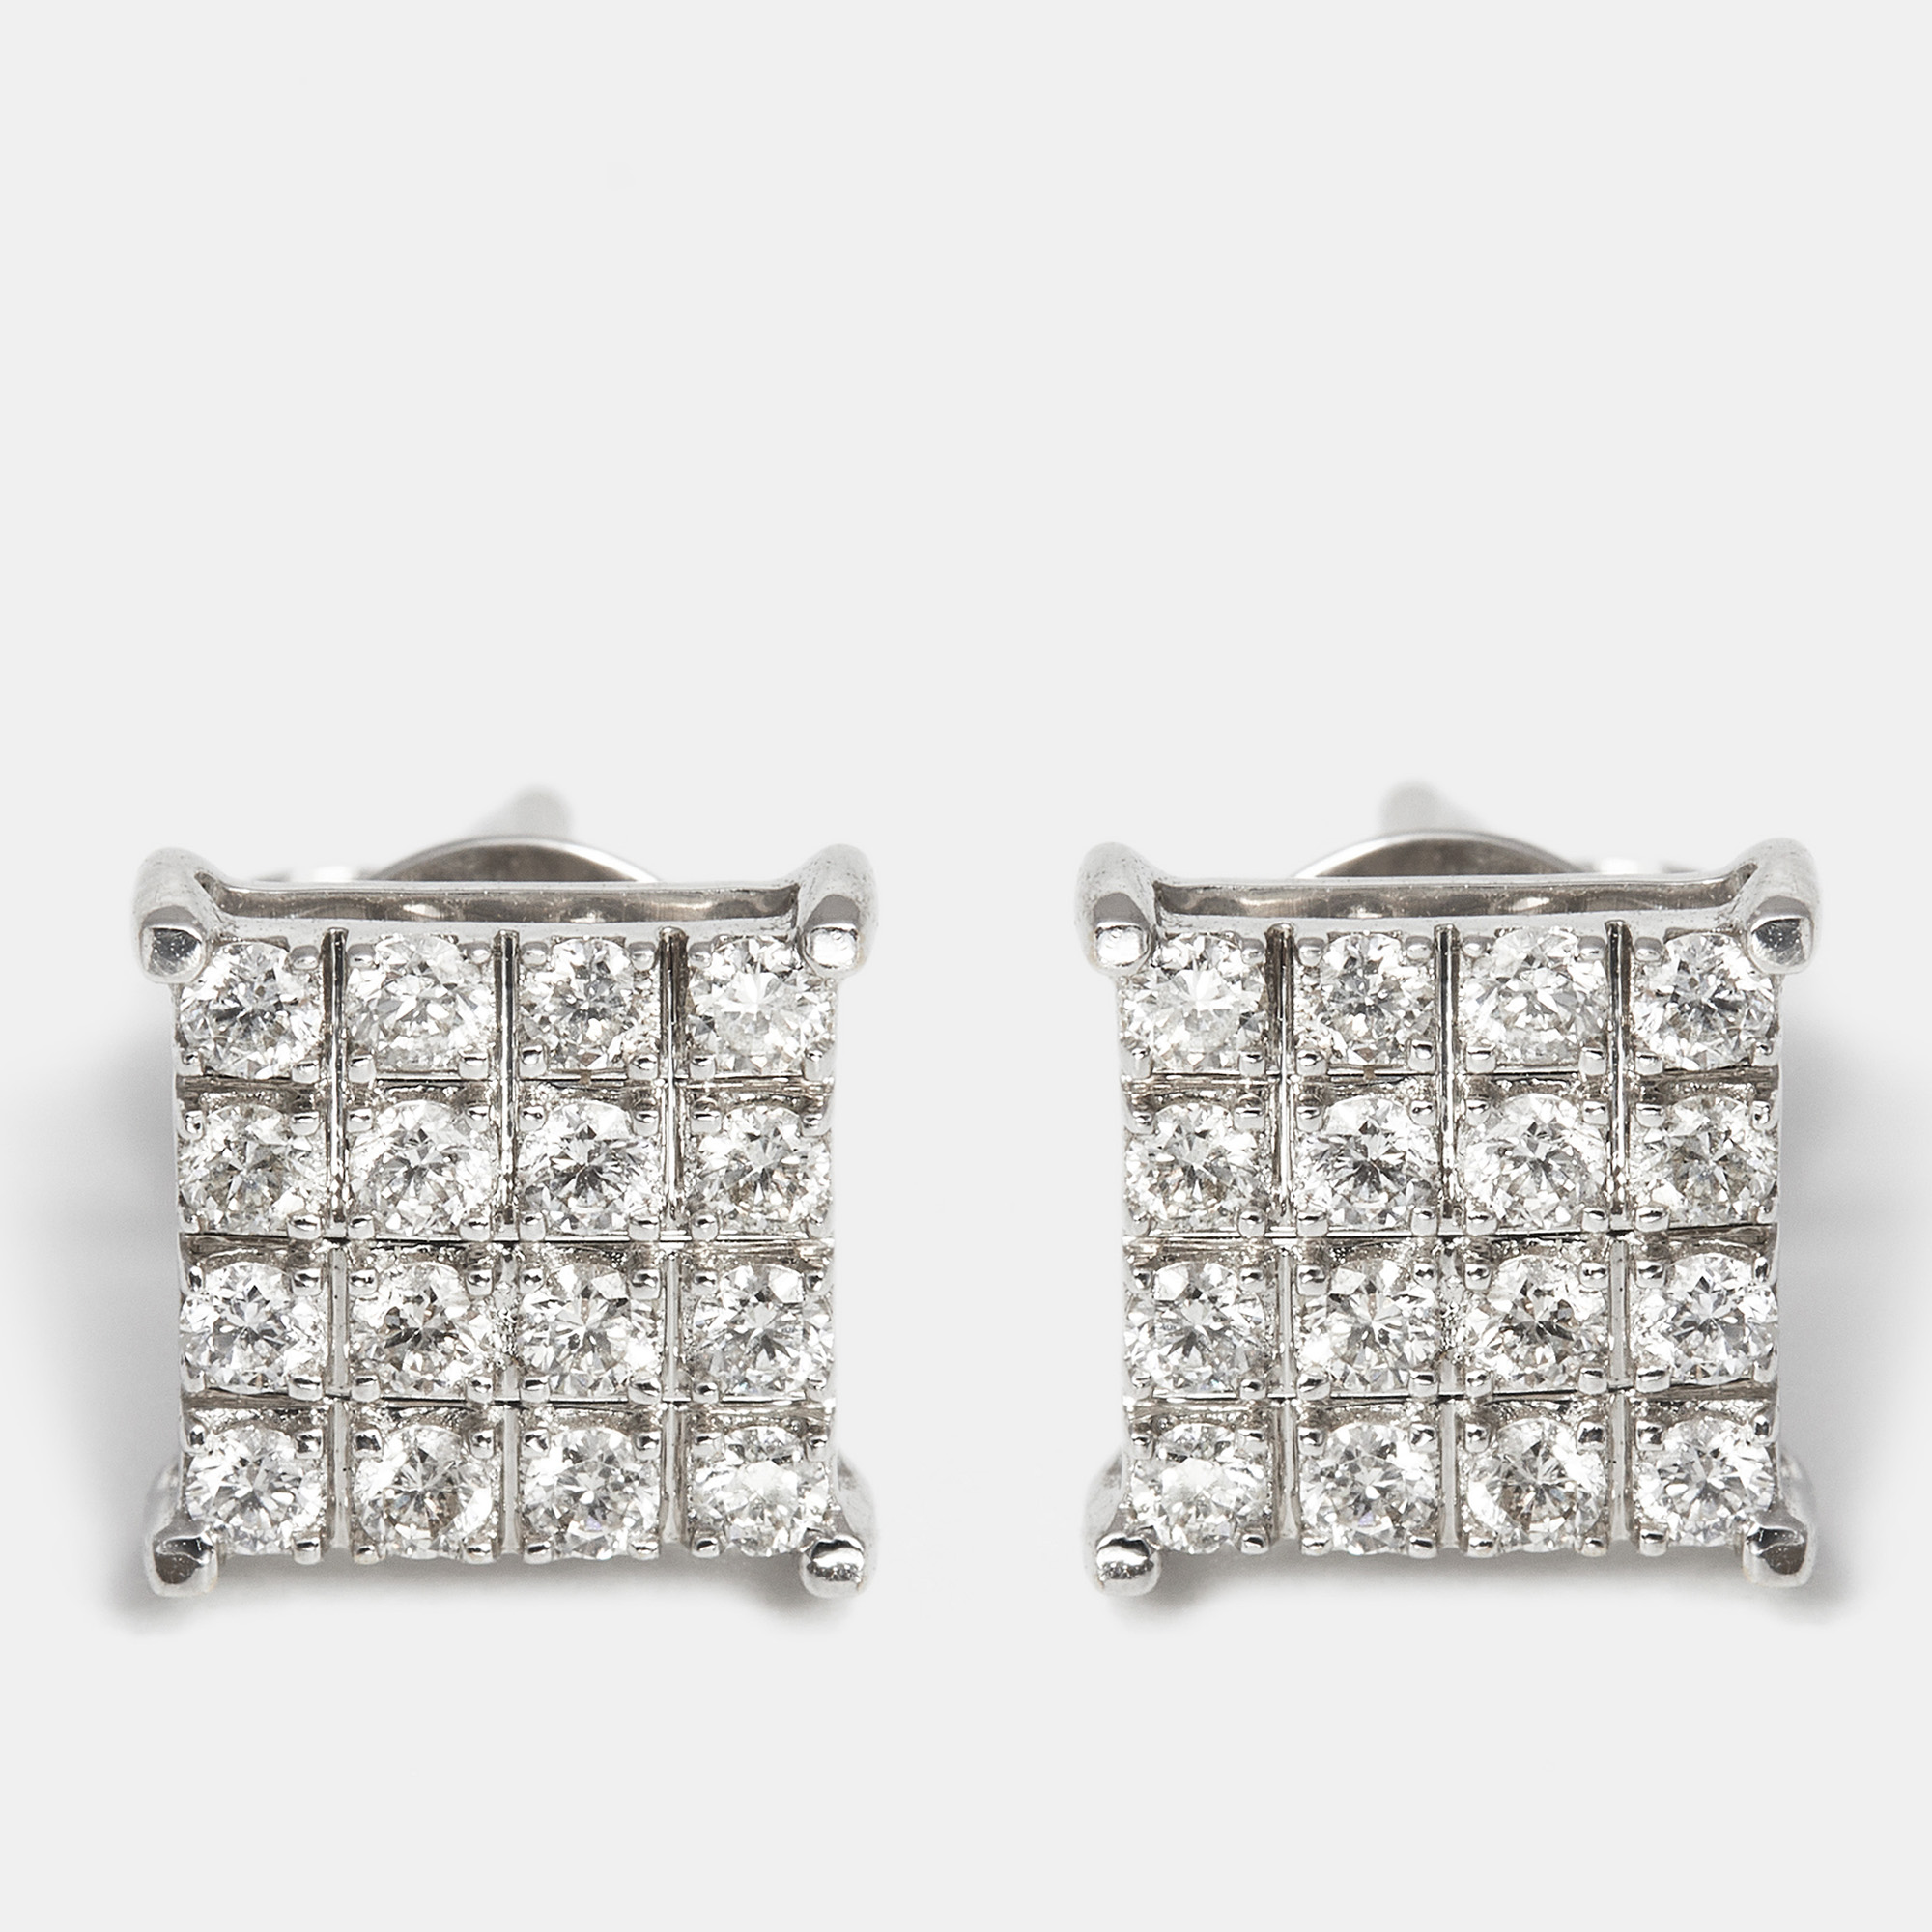 The diamond edit square 18k white gold diamond 0.36 cts stud earrings